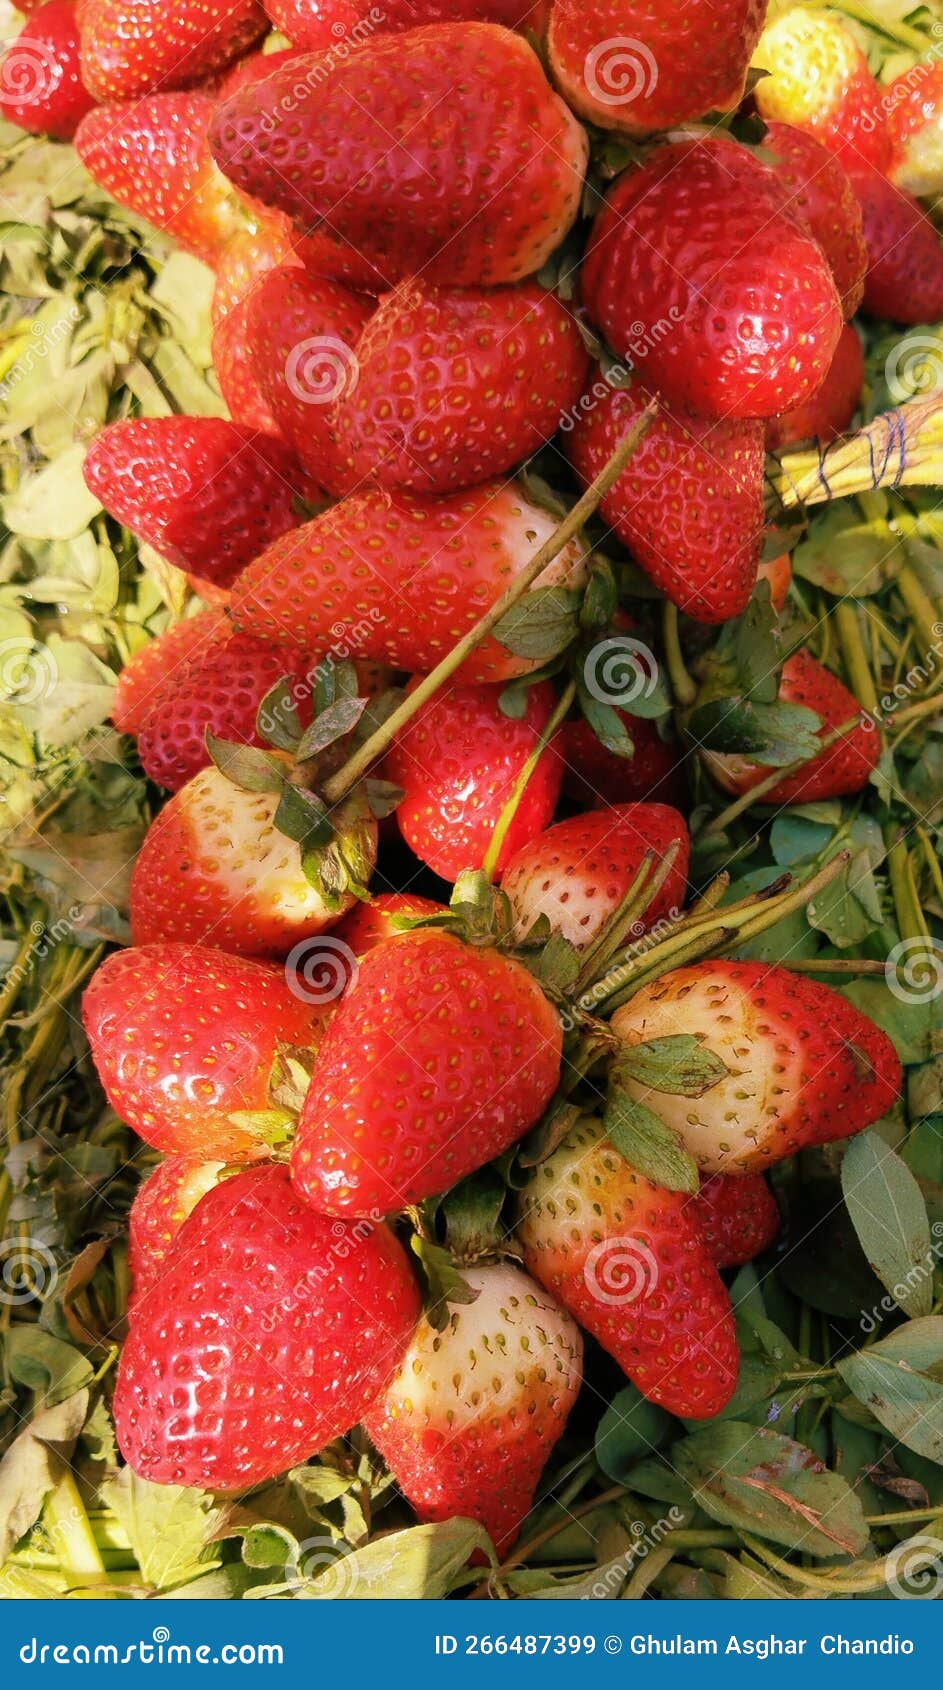 strawberry red garden-strawberry plant fresh fruit food whole ripe fleshy juicy strawberries fraise fresa morango image photo